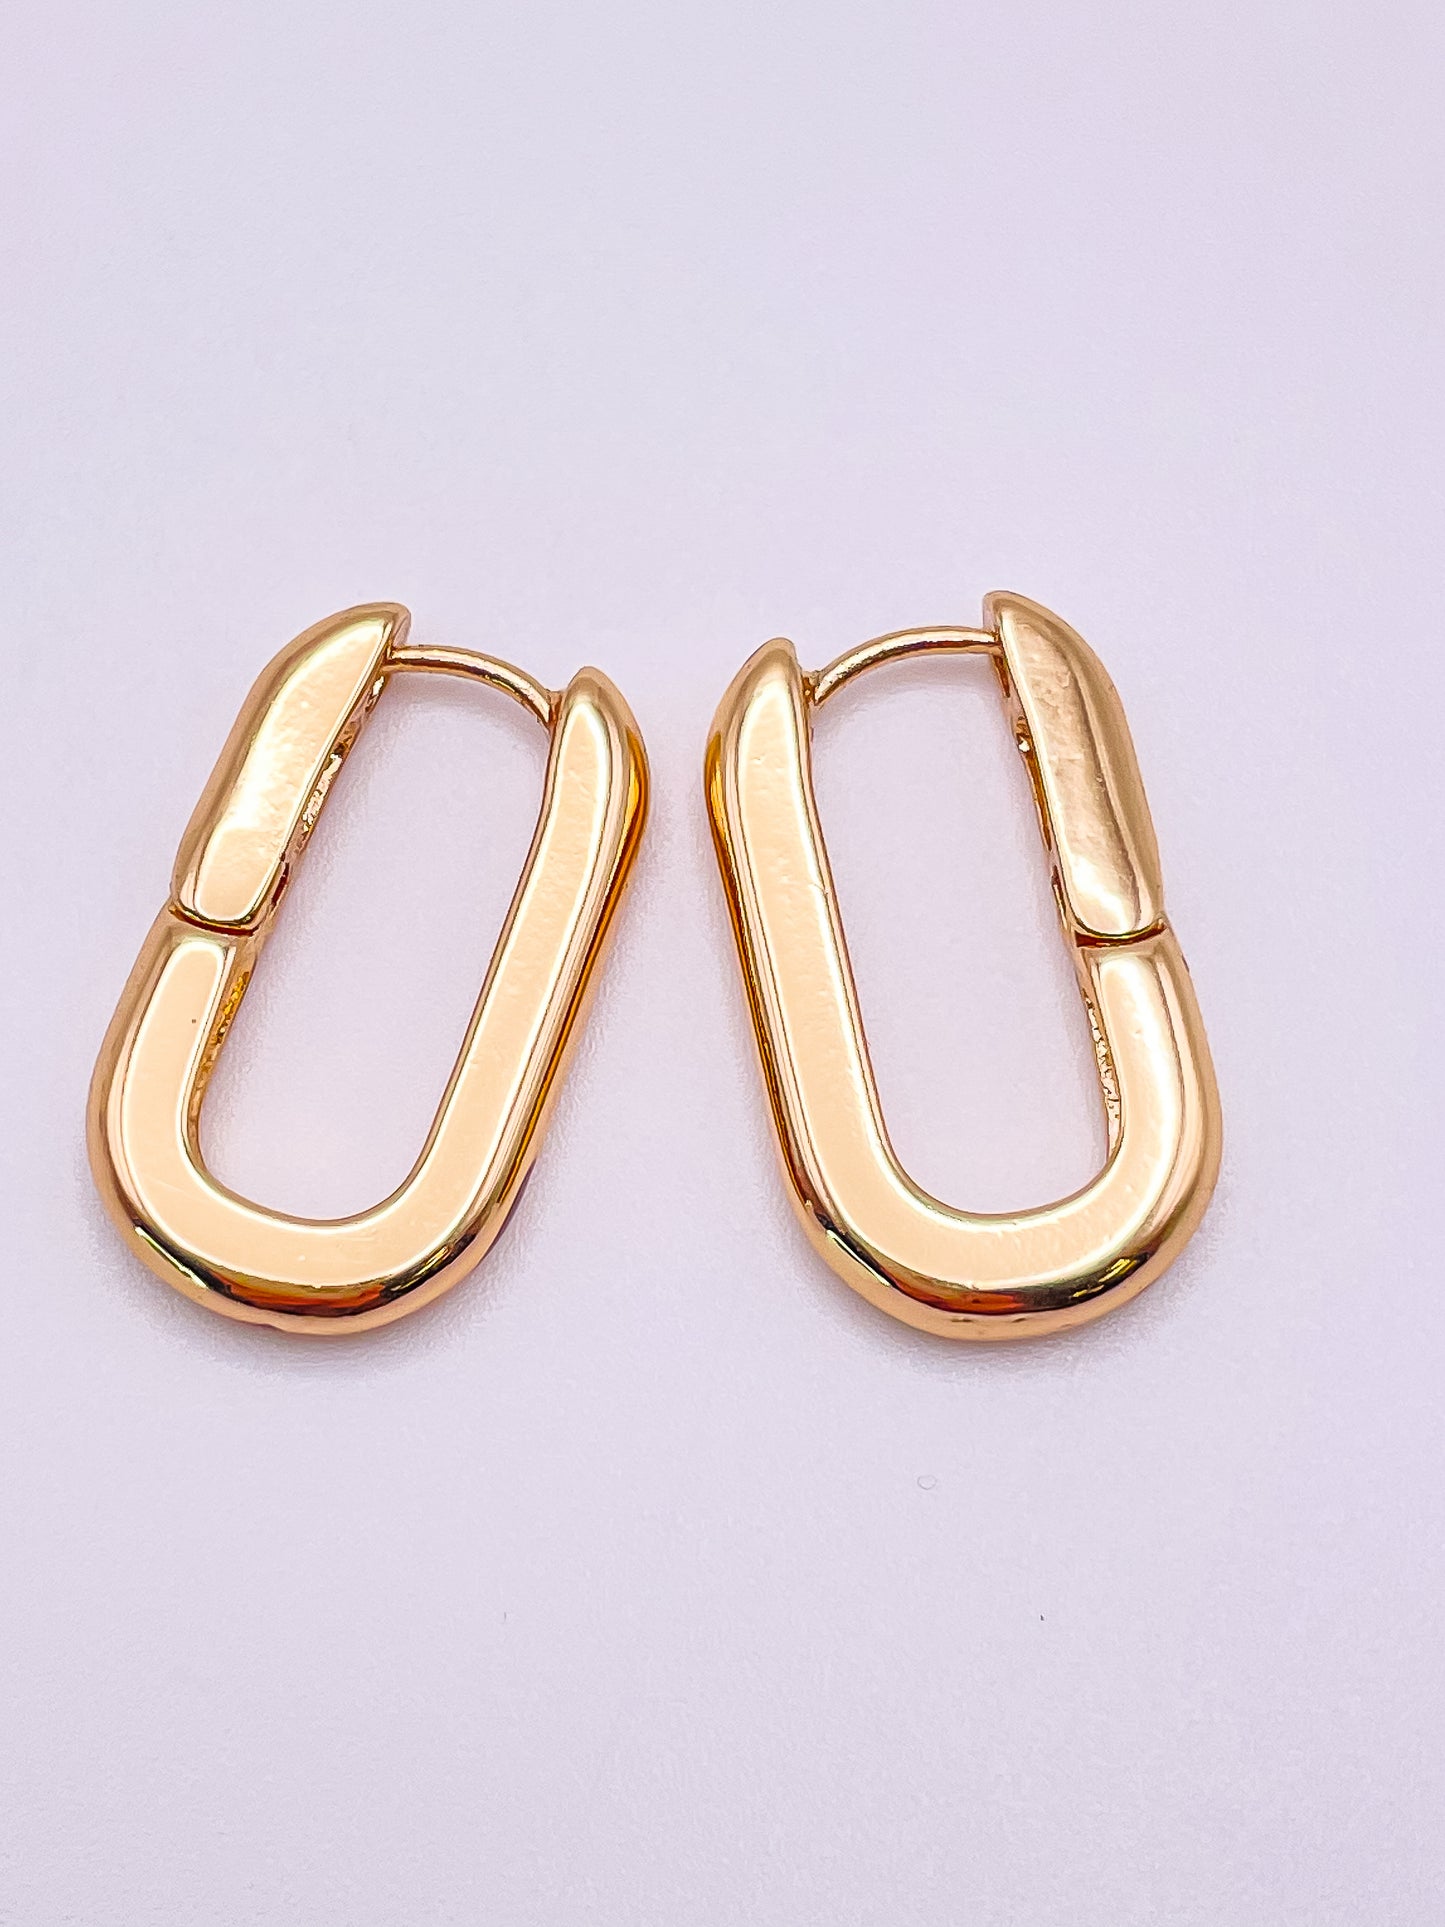 Gold huggie hoop earrings. 